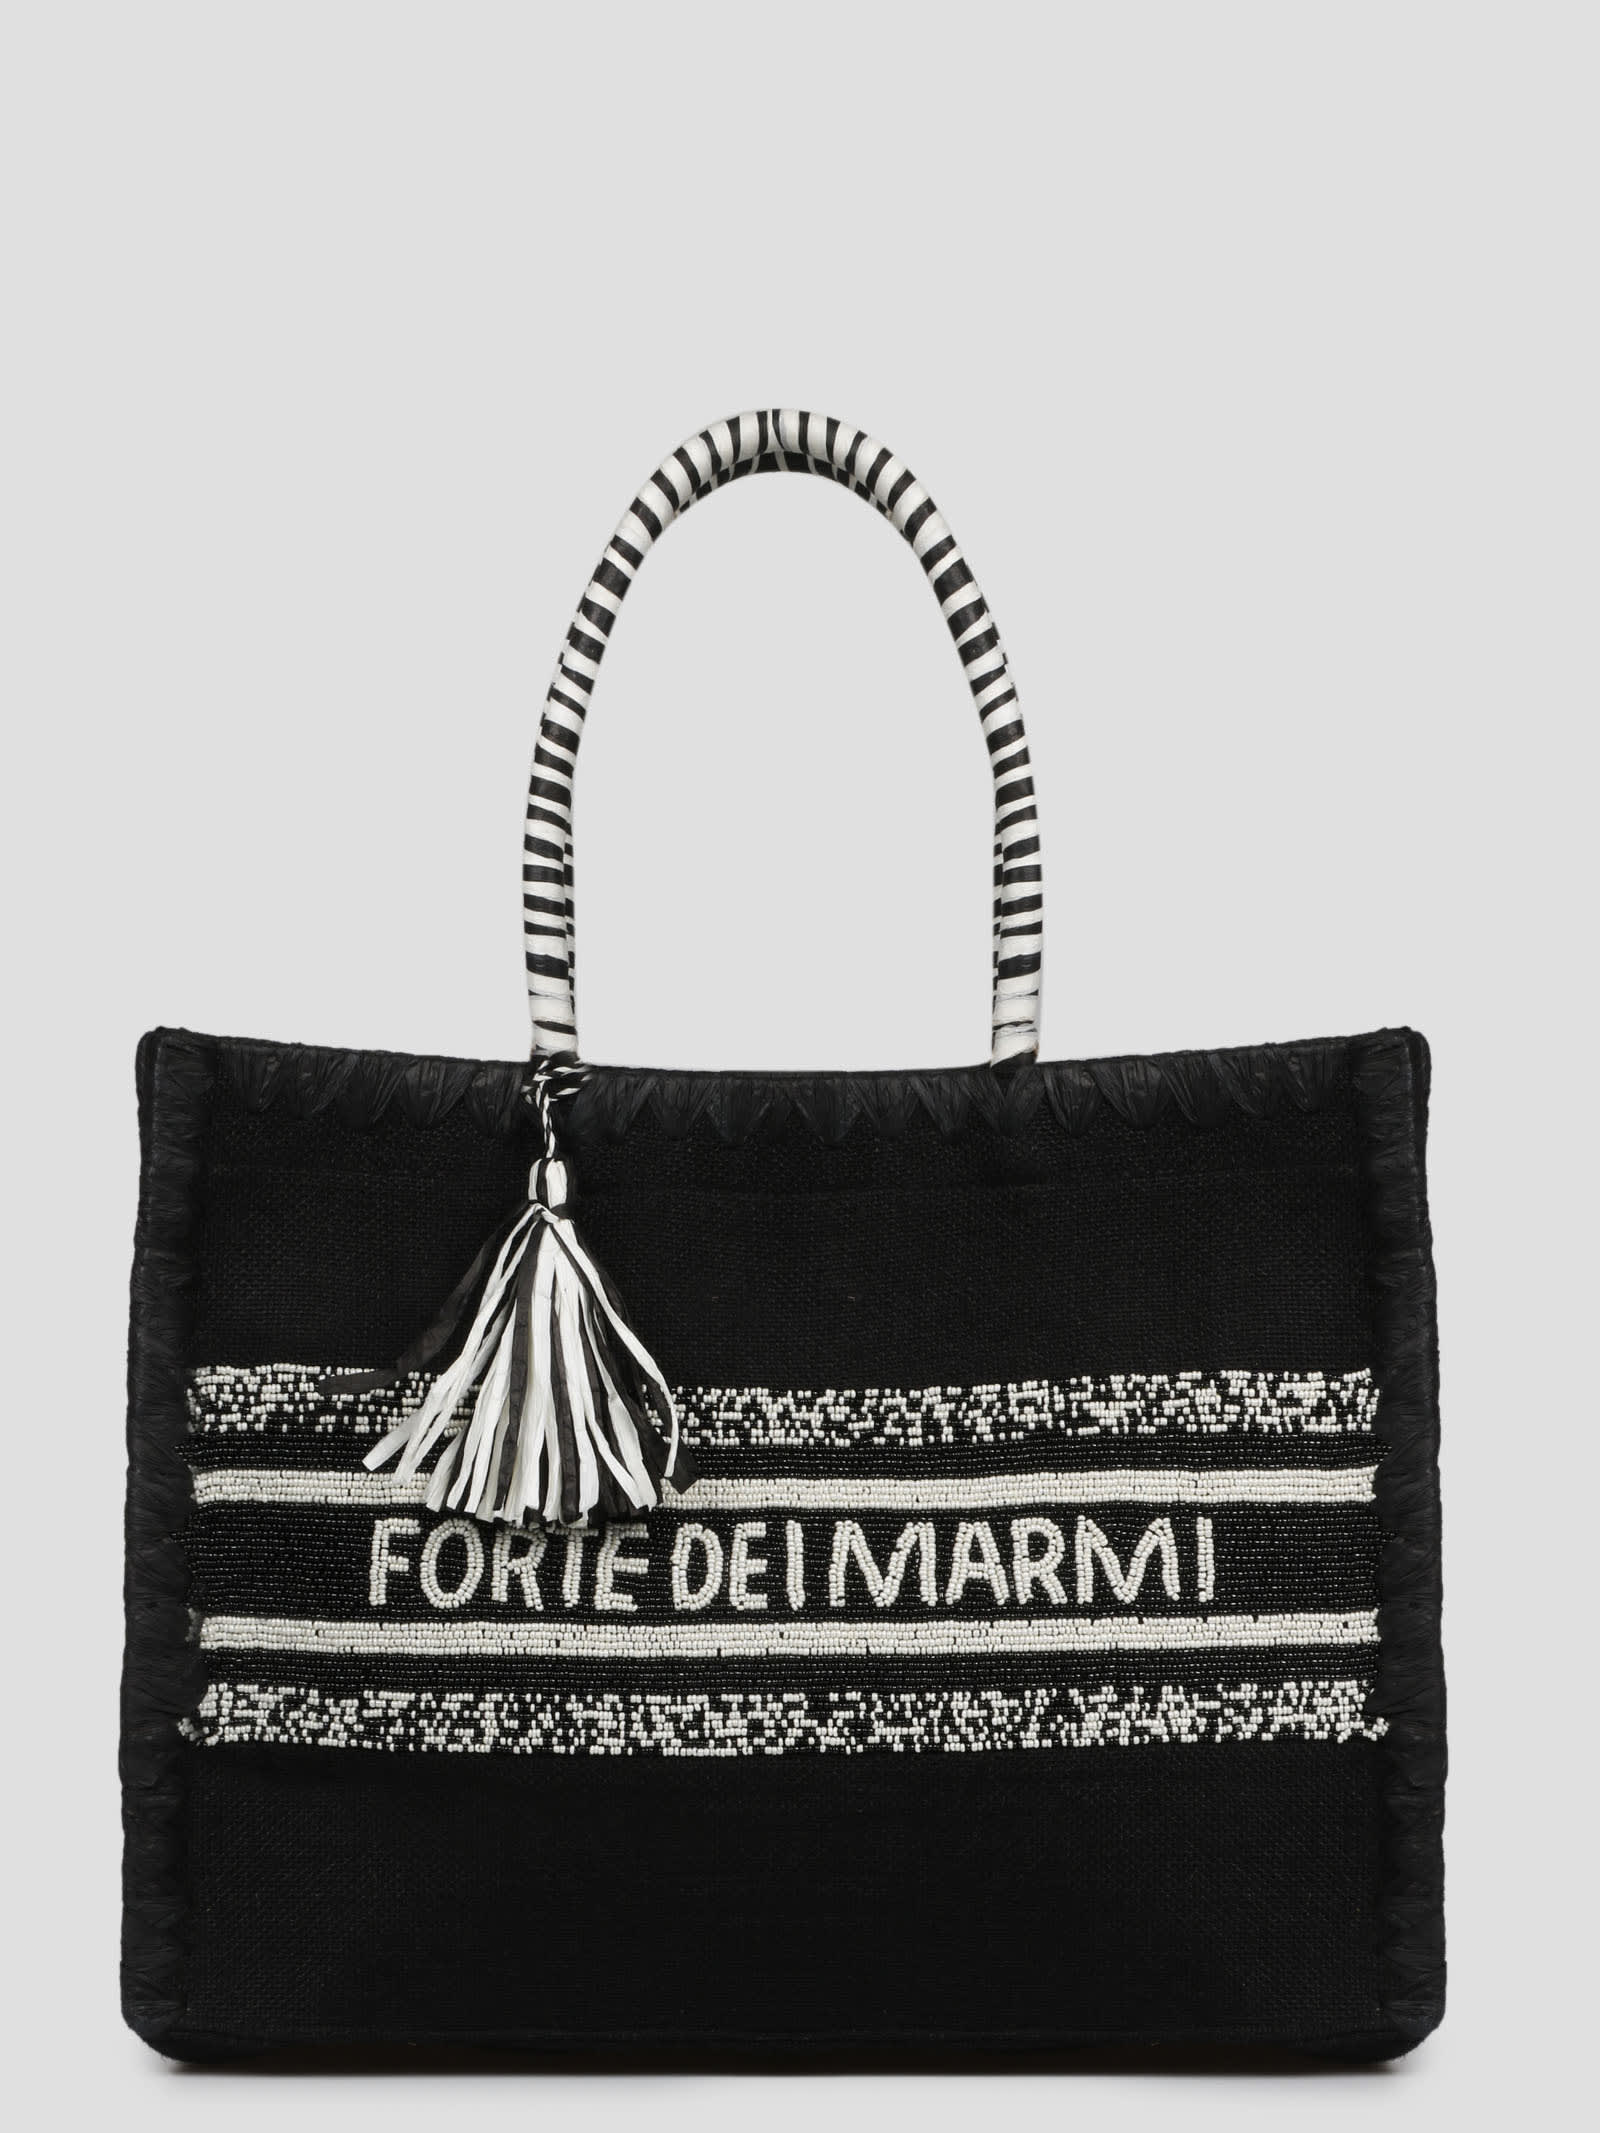 De Siena Forte Dei Marmi Tote Bag